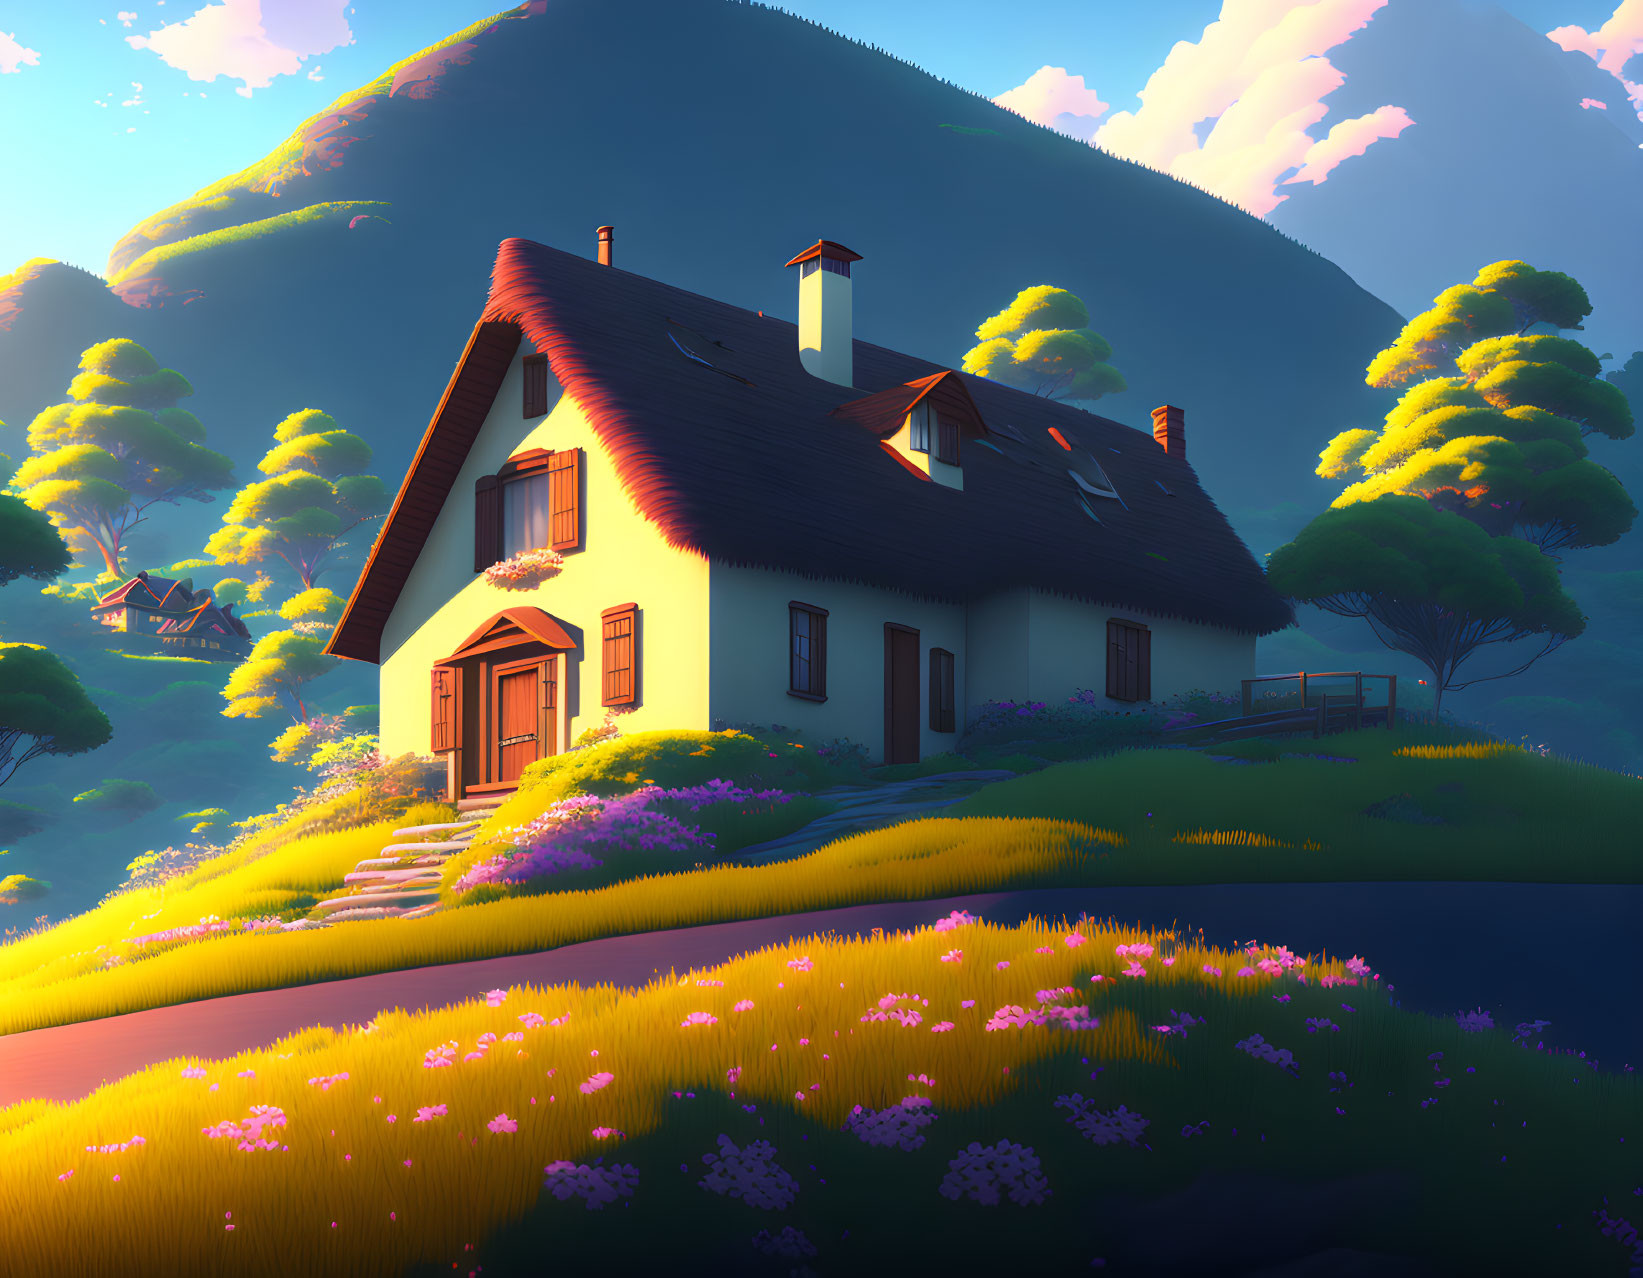 Ghibli house